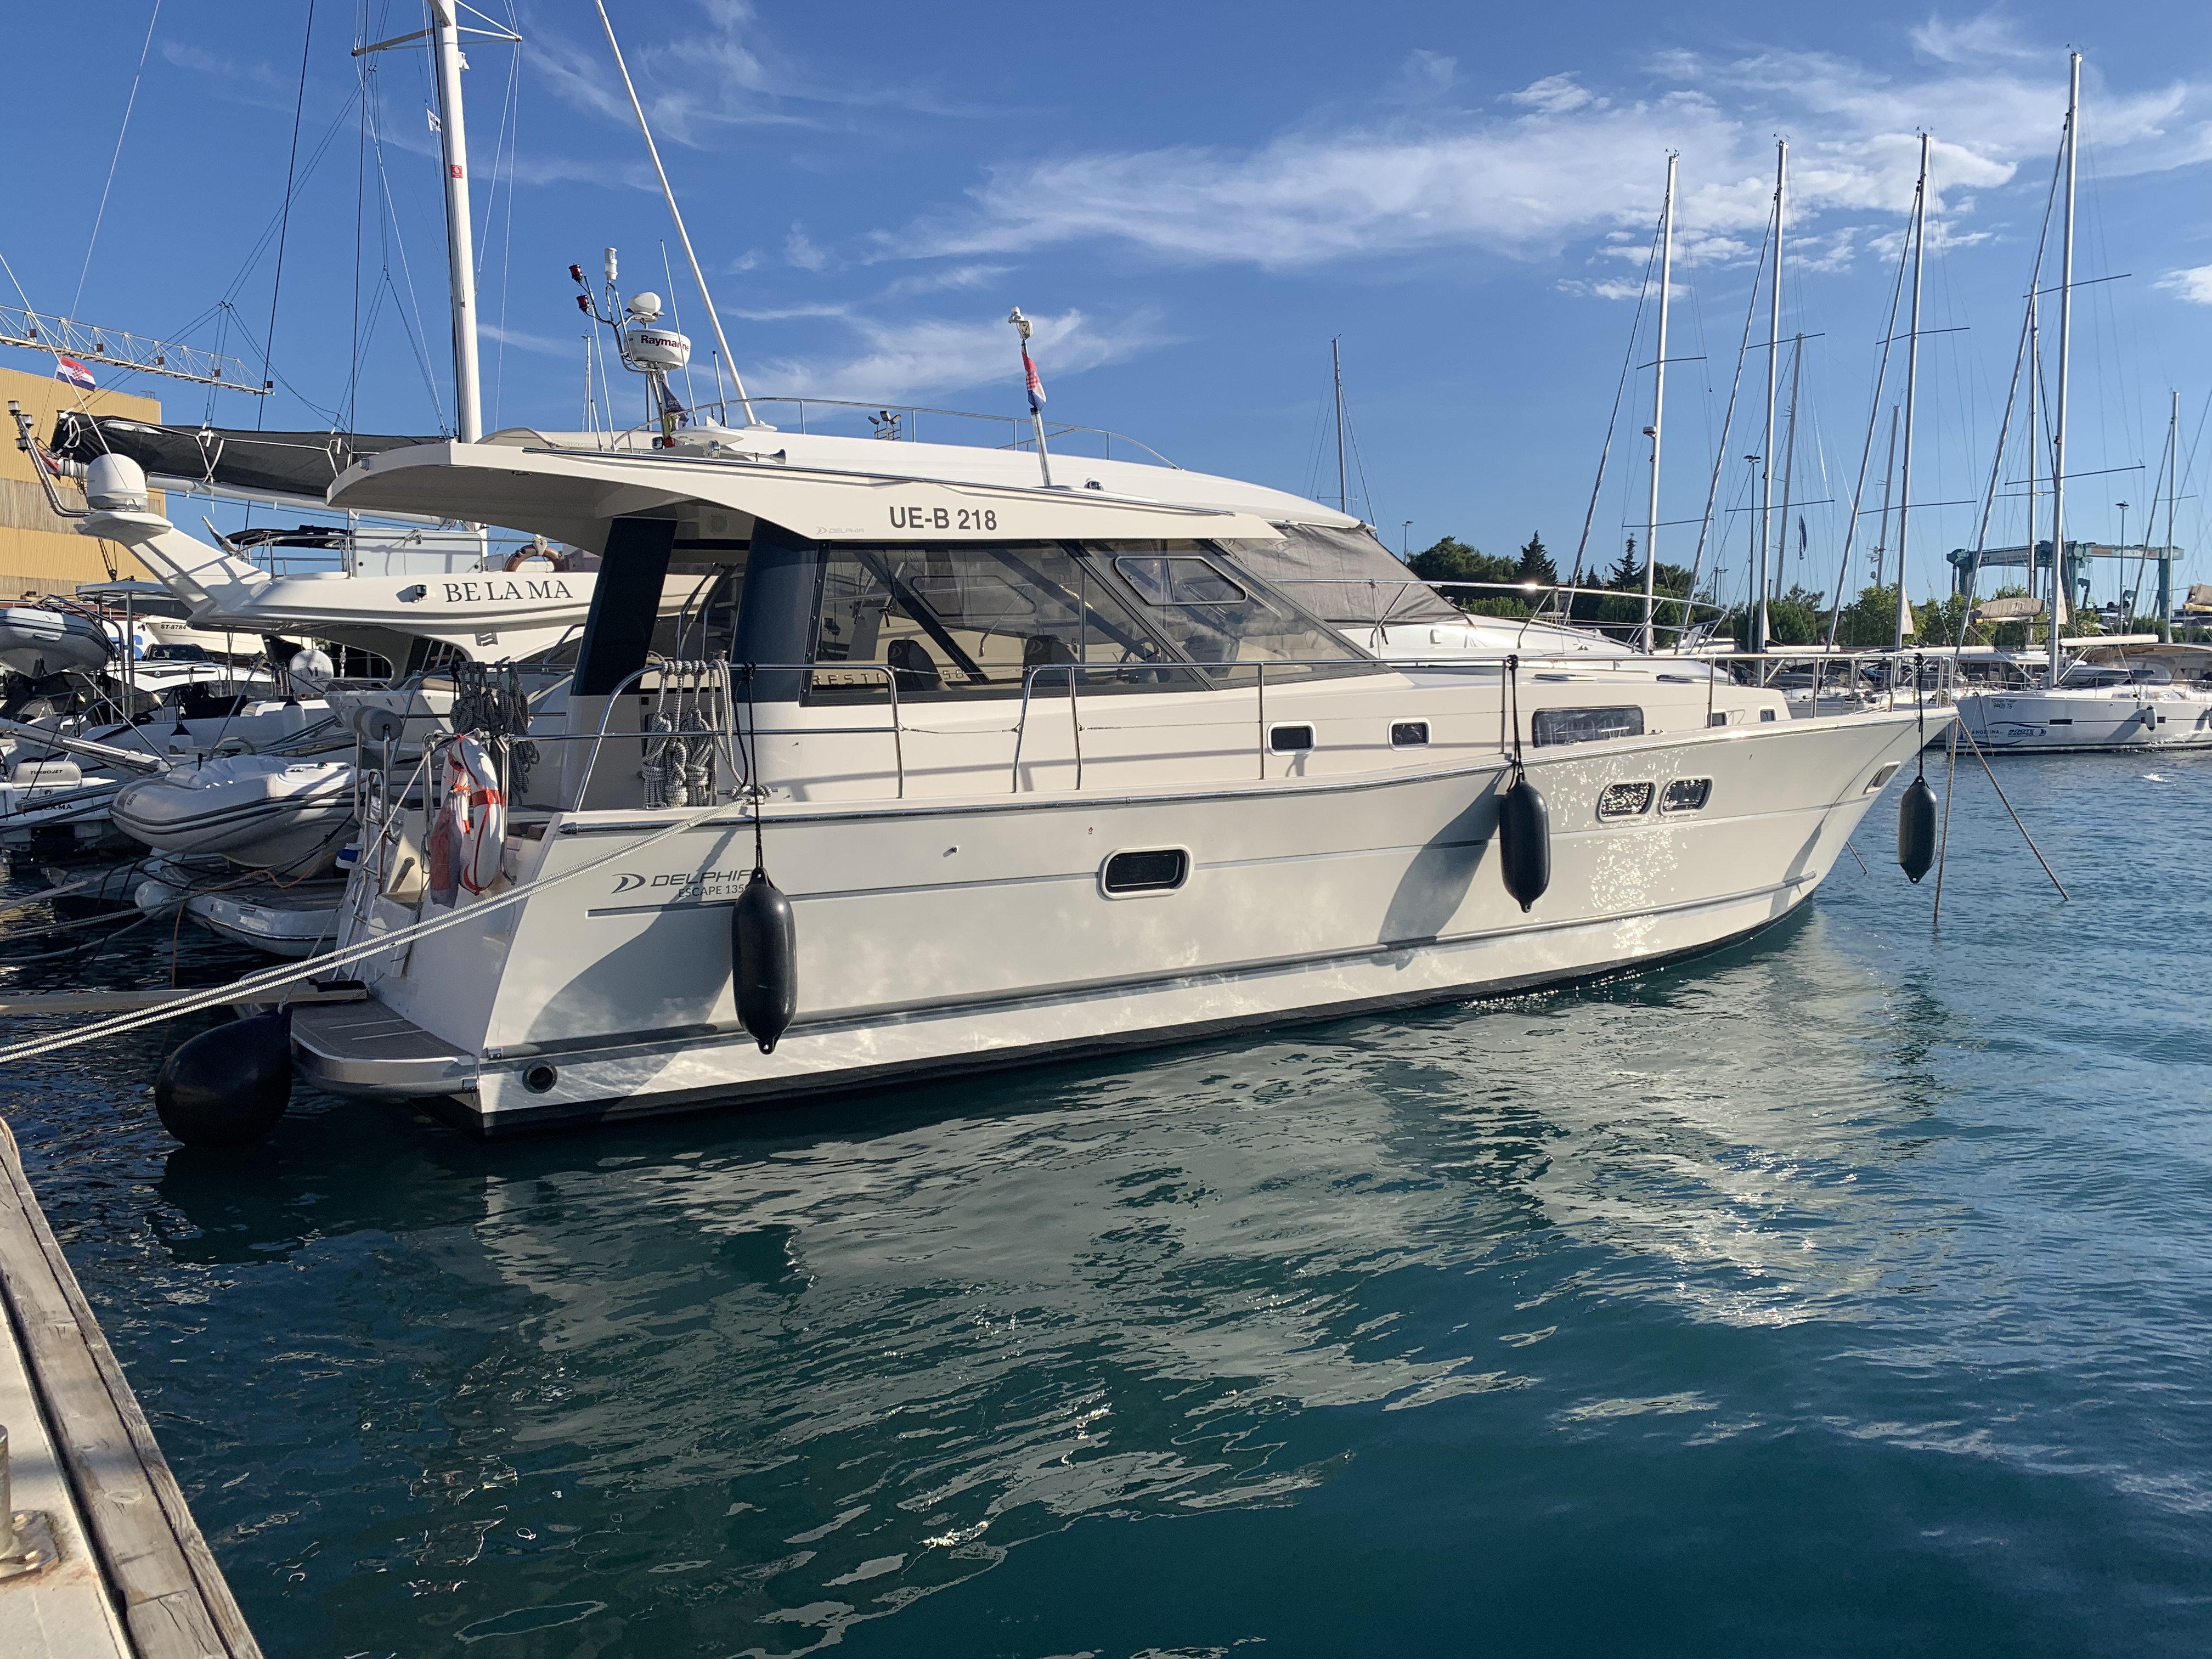 Delphia Escape 1350 - Gulet Charter Croatia & Boat hire in Croatia Split-Dalmatia Split Trogir Trogir SCT Marina Trogir 2